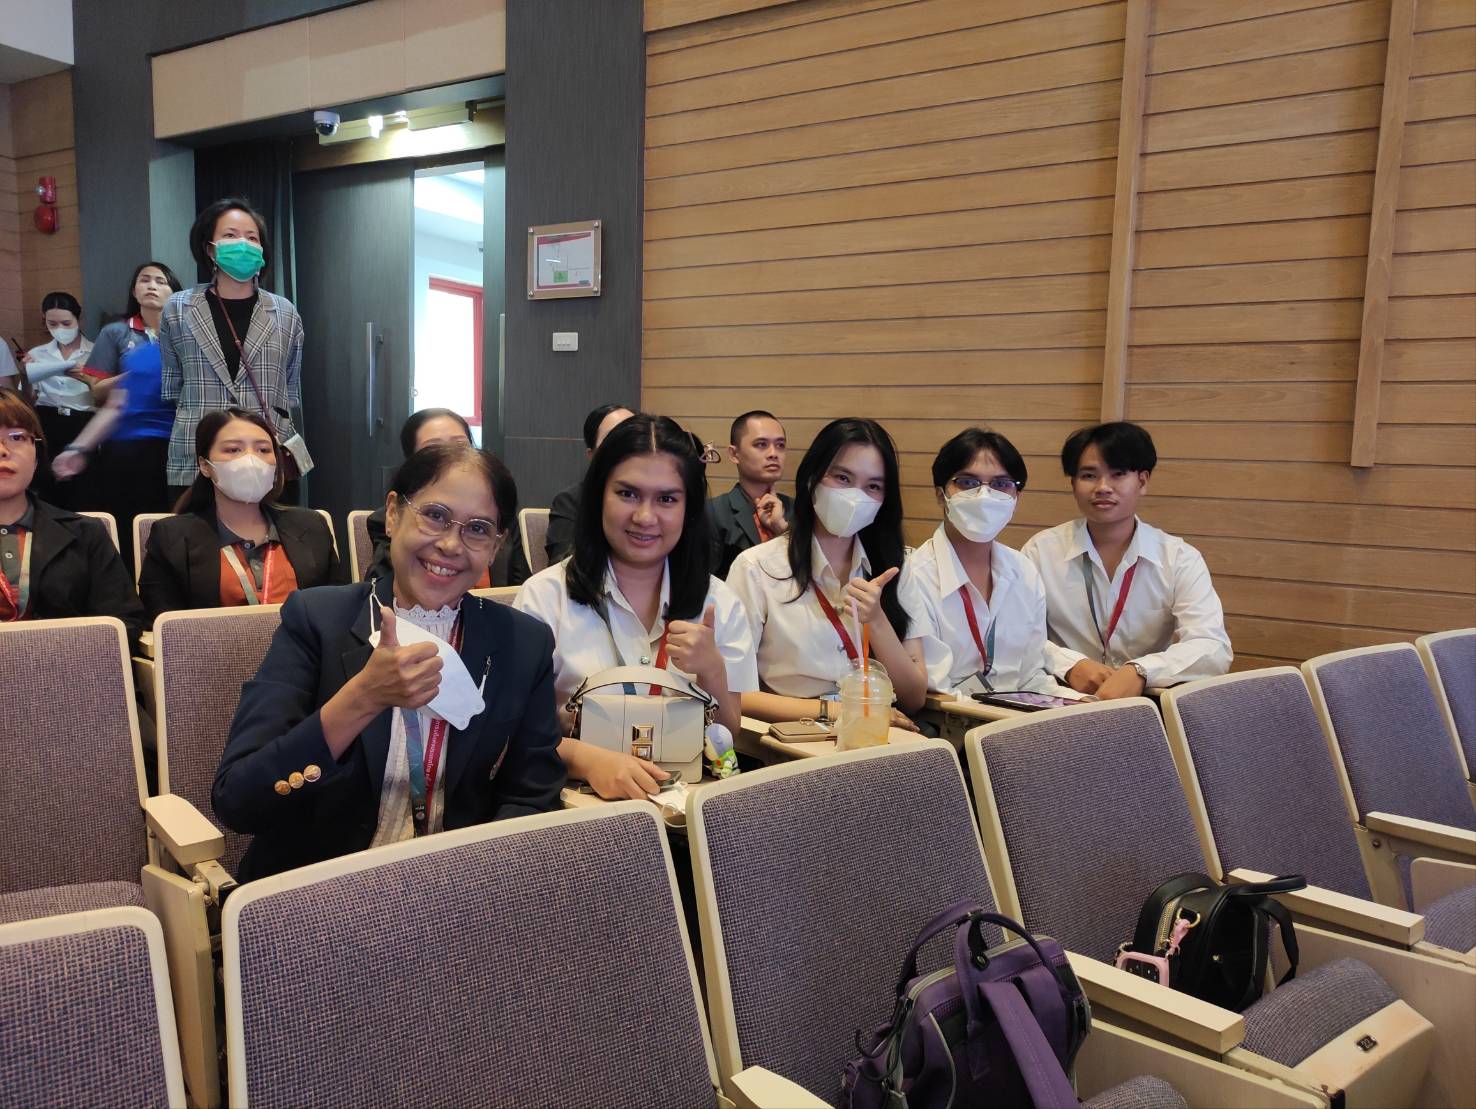 ศูนย์ Smile & Smart Center เข้าร่วมประชุมสัญจรกรรมการพัฒนาศักยภาพนิสิตนักศึกษา ที่ประชุมอธิการบดีแห่งประเทศไทย ครั้งที่ 2/2566